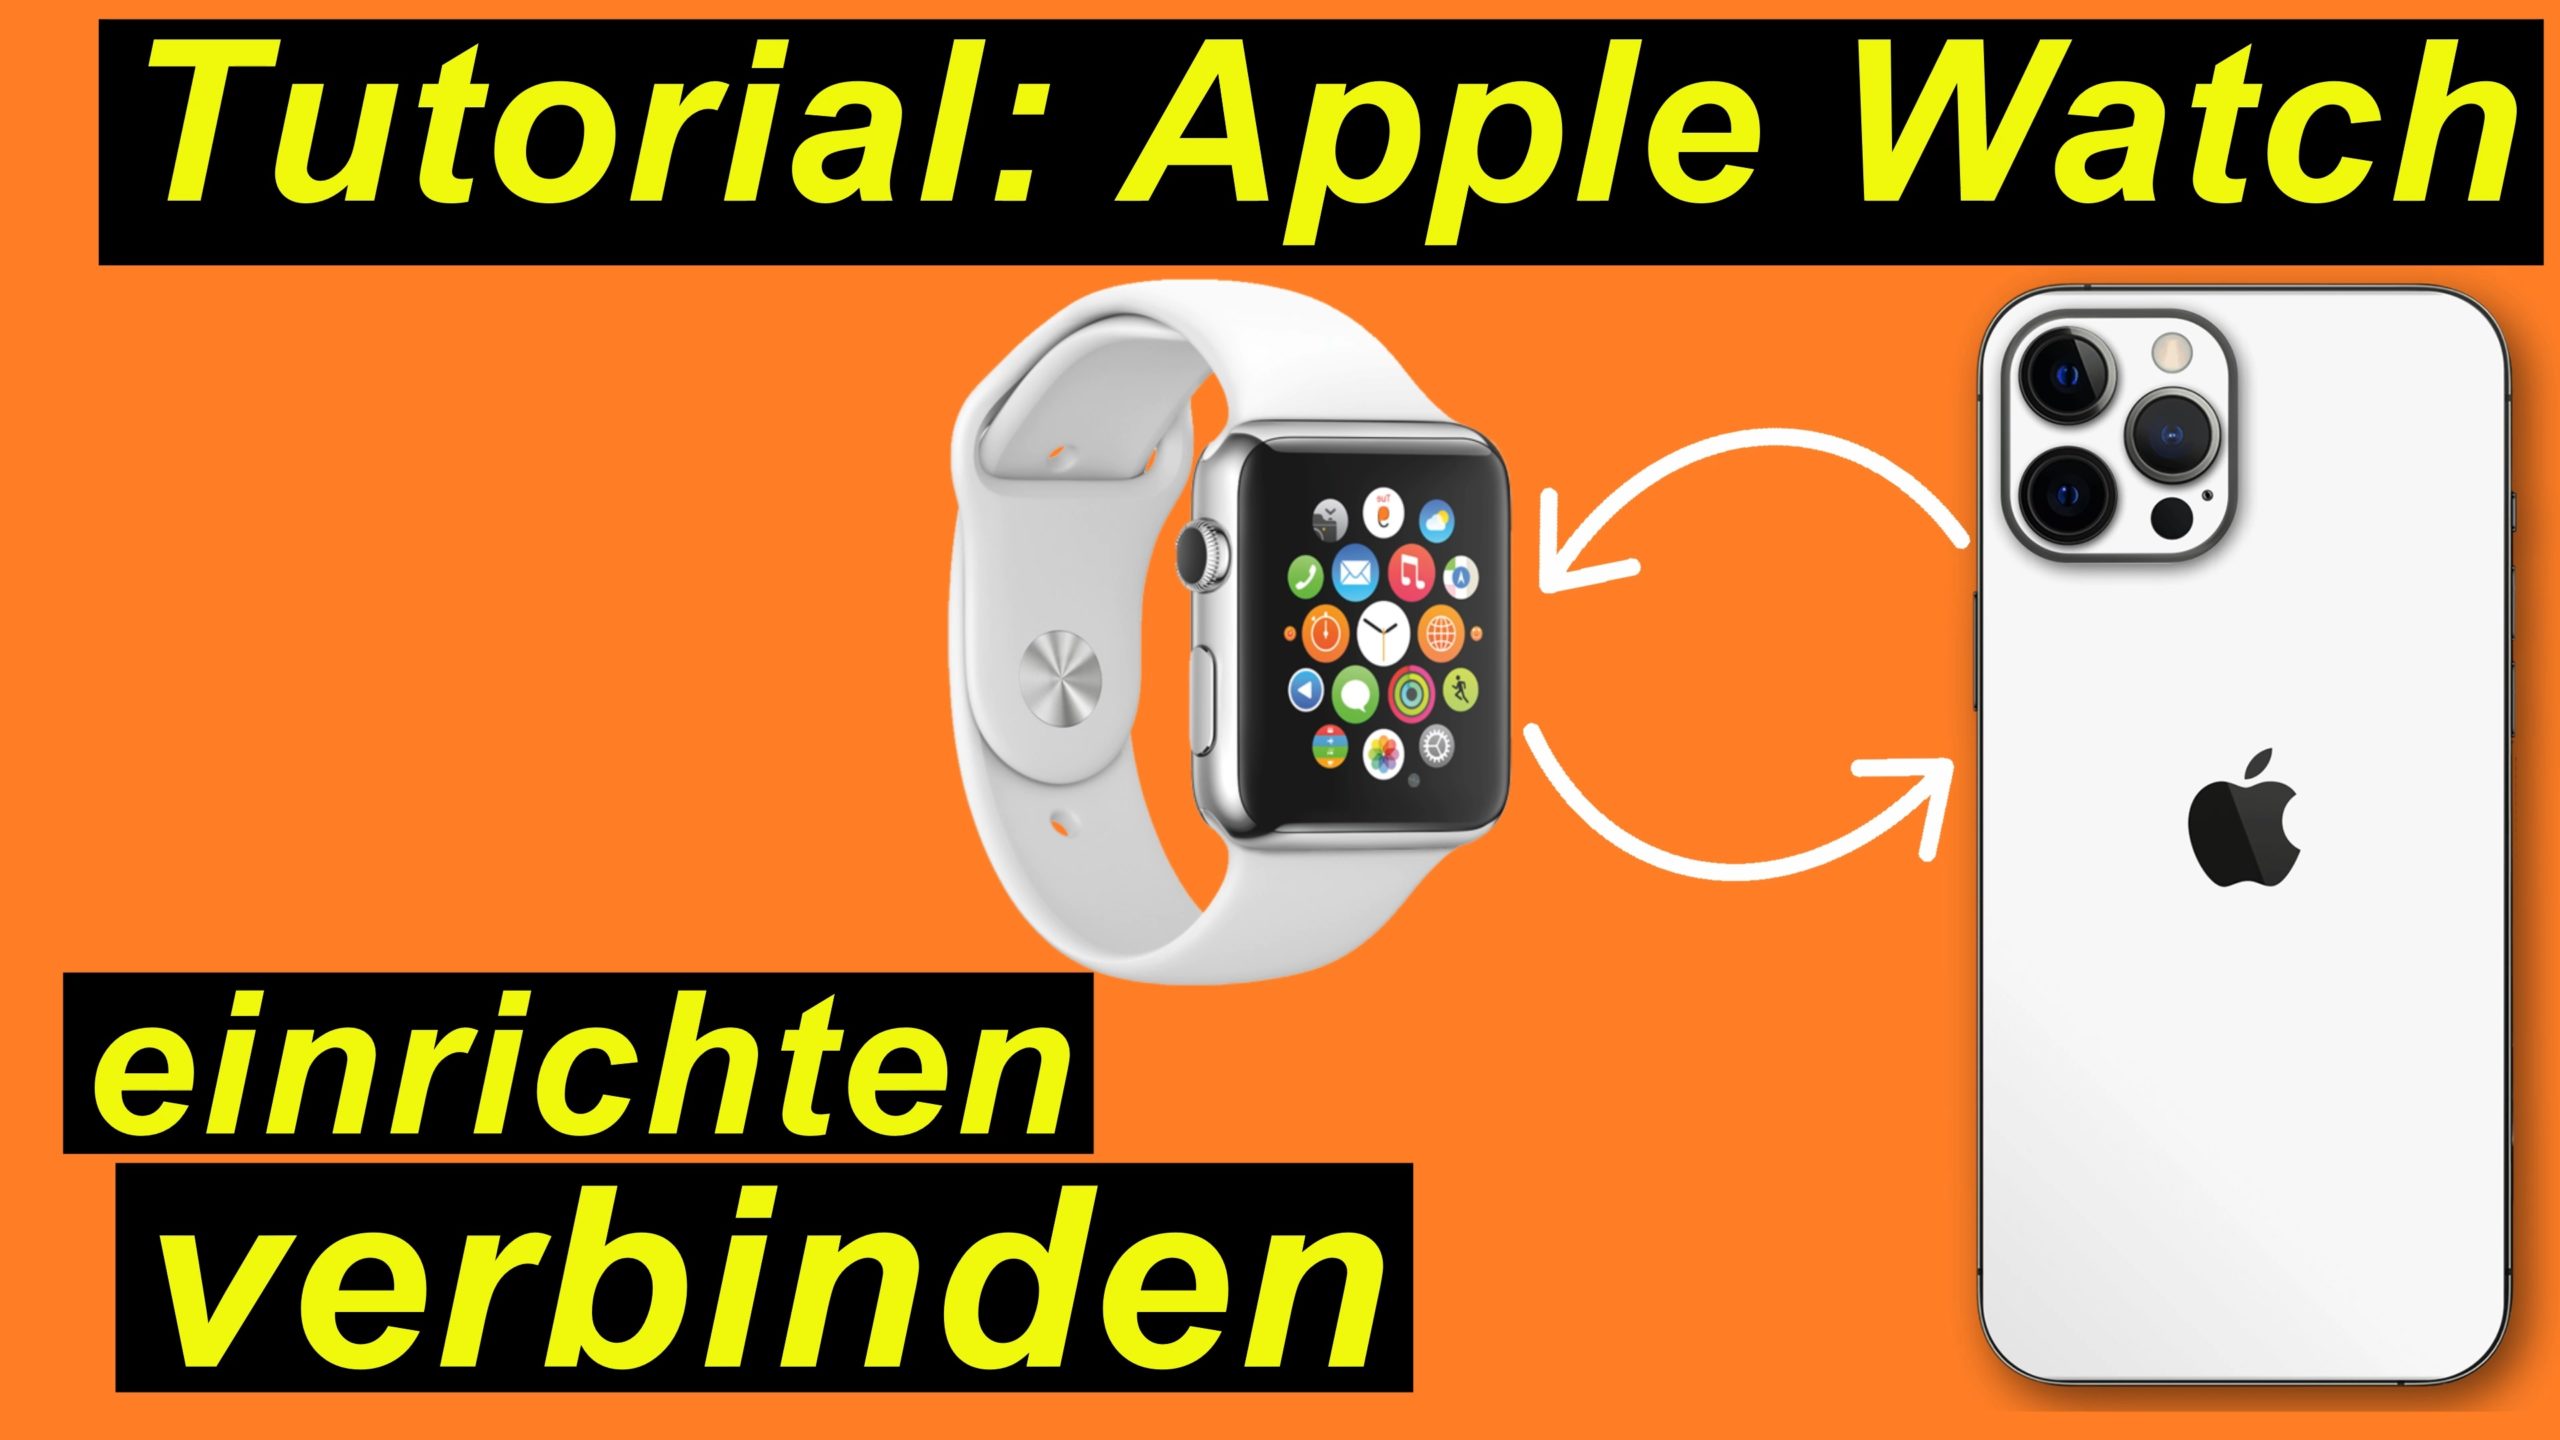 Tutorial ausführlich: Apple Watch einrichten und verbinden mit dem iPhone